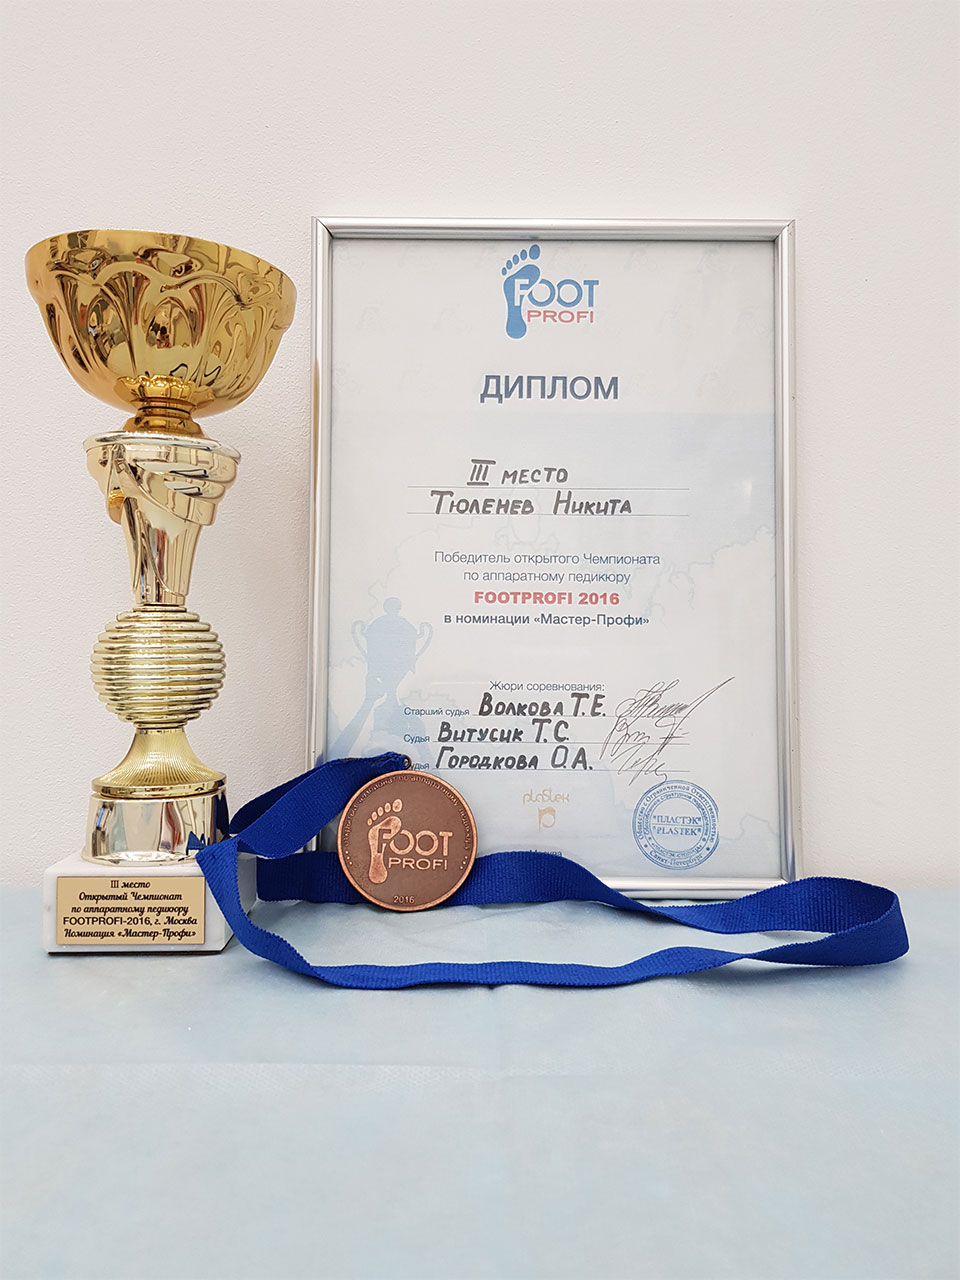 Диплом FootProfi Тюленев Никита 3 место 2016 год